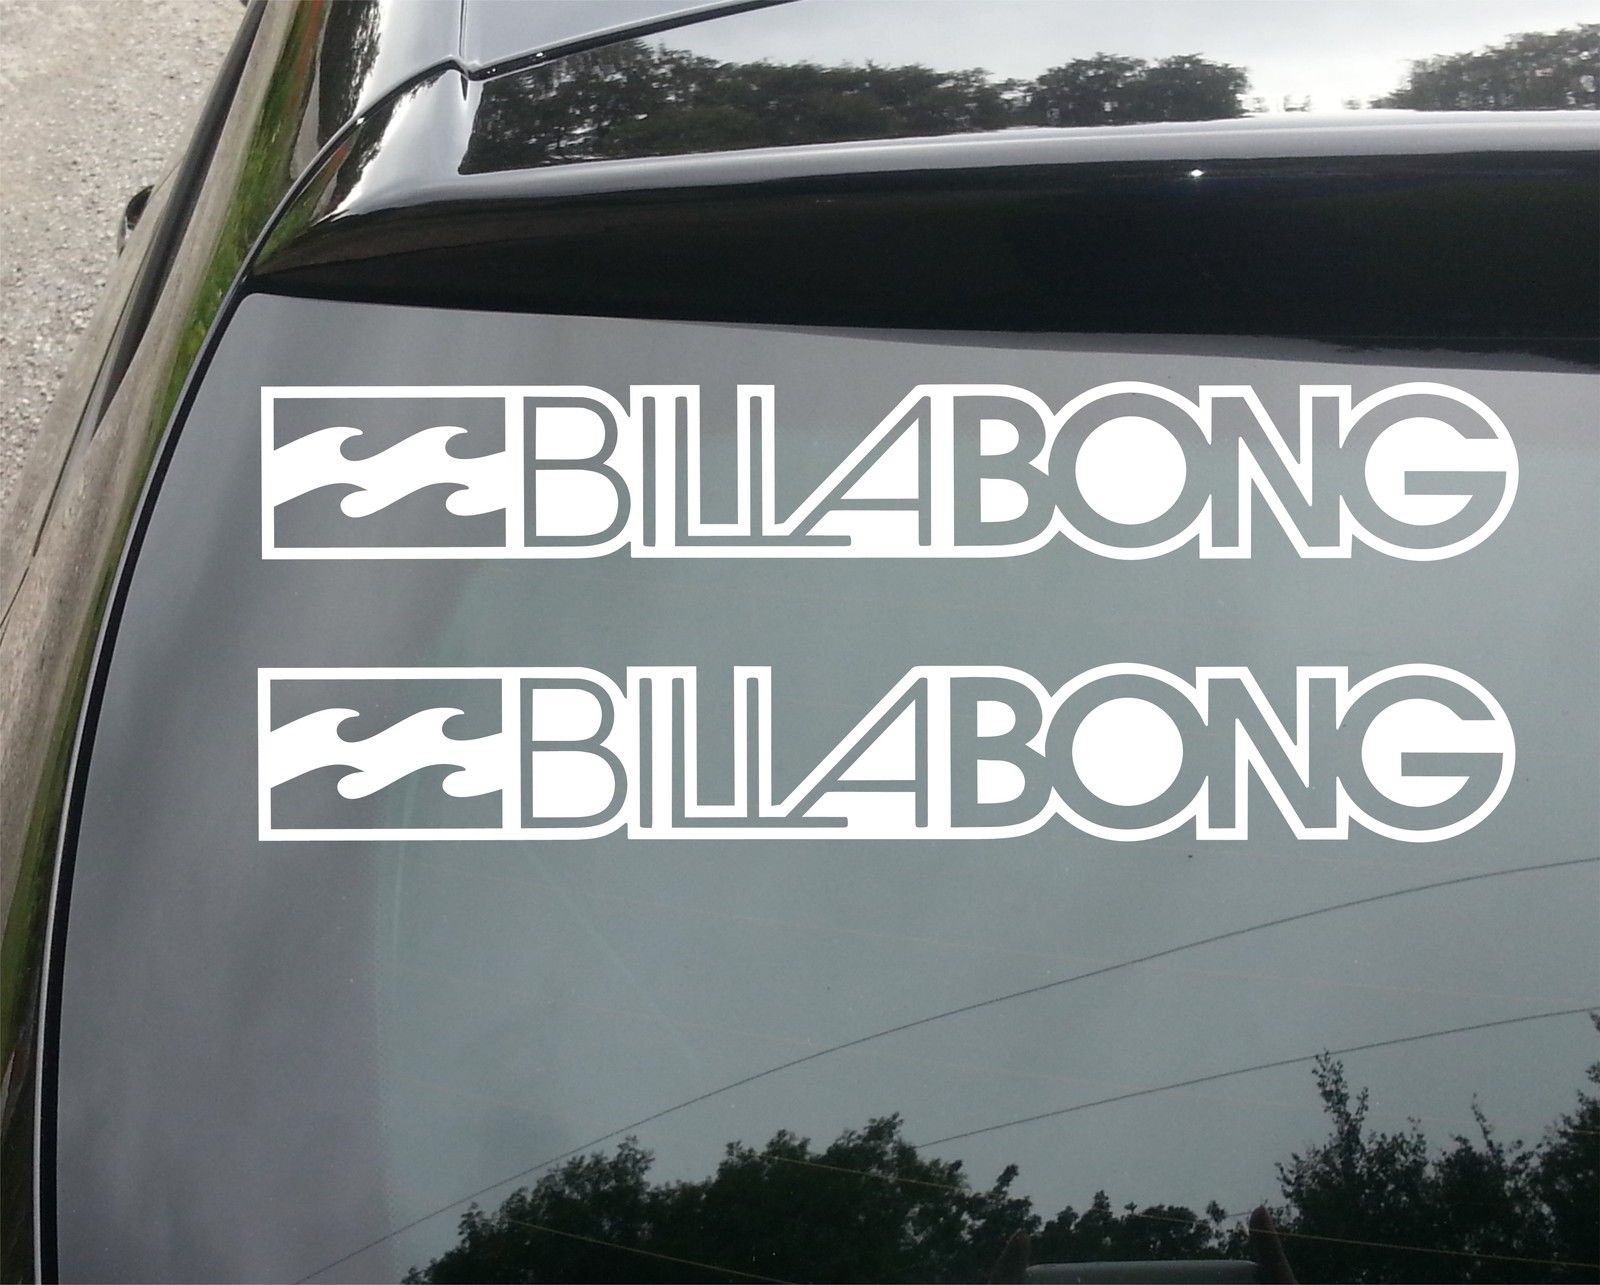 BILLABONG Die Cut White Vinyl Decal/Sticker 5 in x 3.4 in Surf Car truck Window 